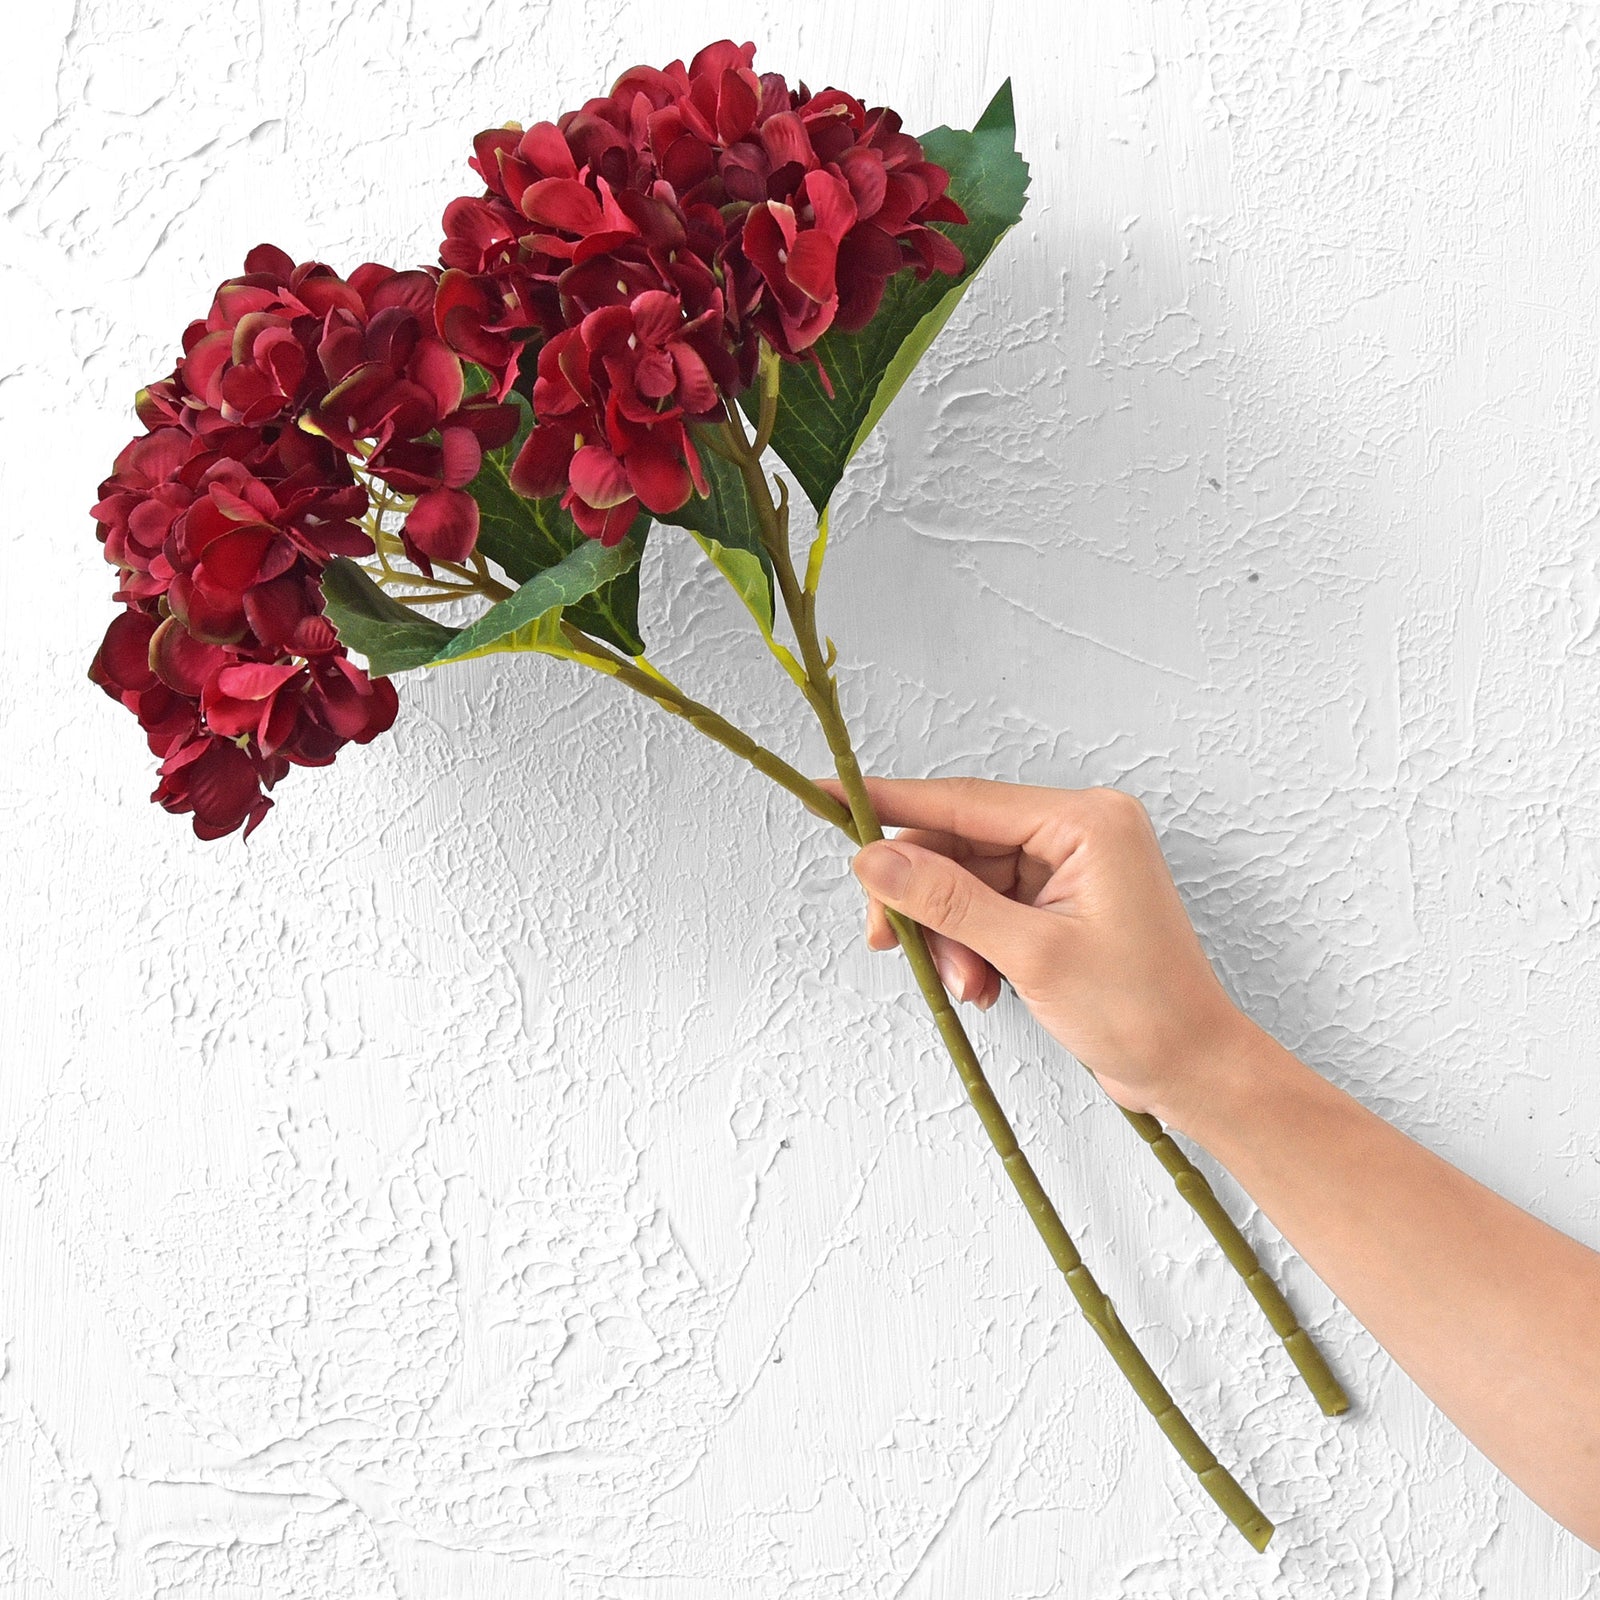 5 Stems Scarlet Artificial Silk Hydrangea Flowers